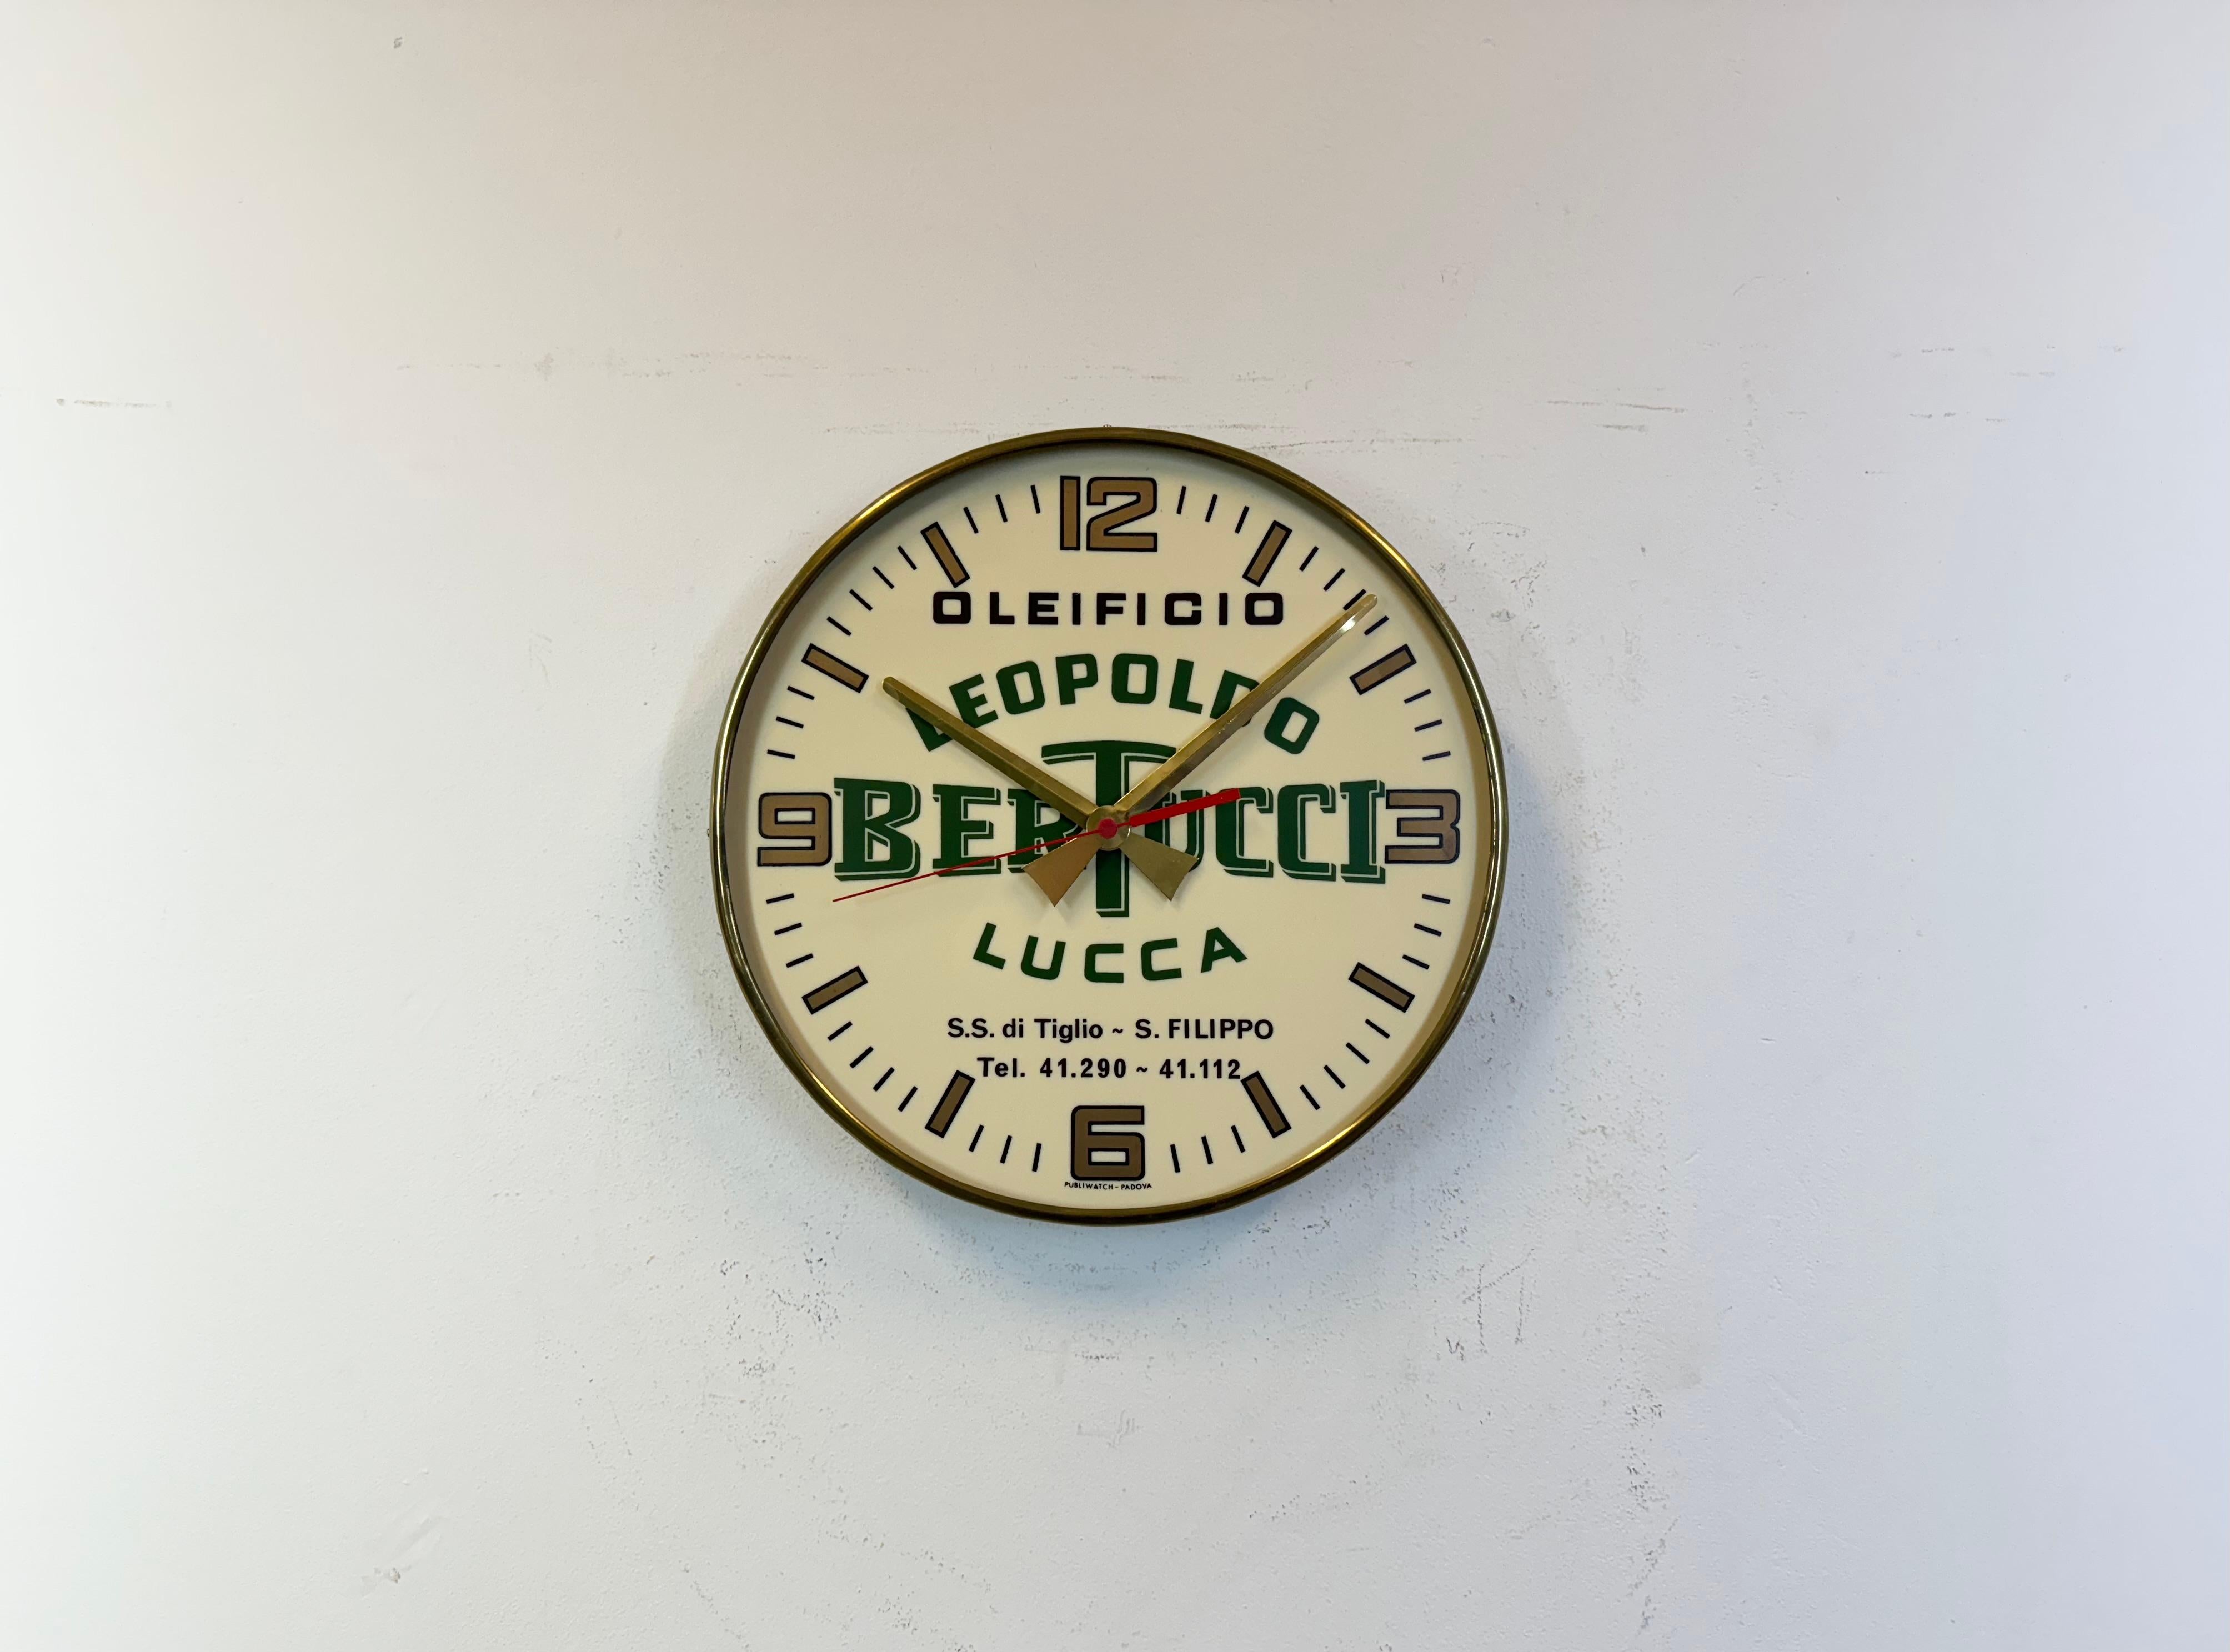 Horloge murale publicitaire vintage fabriquée par Publiwatch Padova dans les années 1970 en Italie. Elle est dotée d'un corps en métal et d'un cadran en plastique avec des aiguilles en aluminium. La pièce est dotée d'un mécanisme d'horlogerie